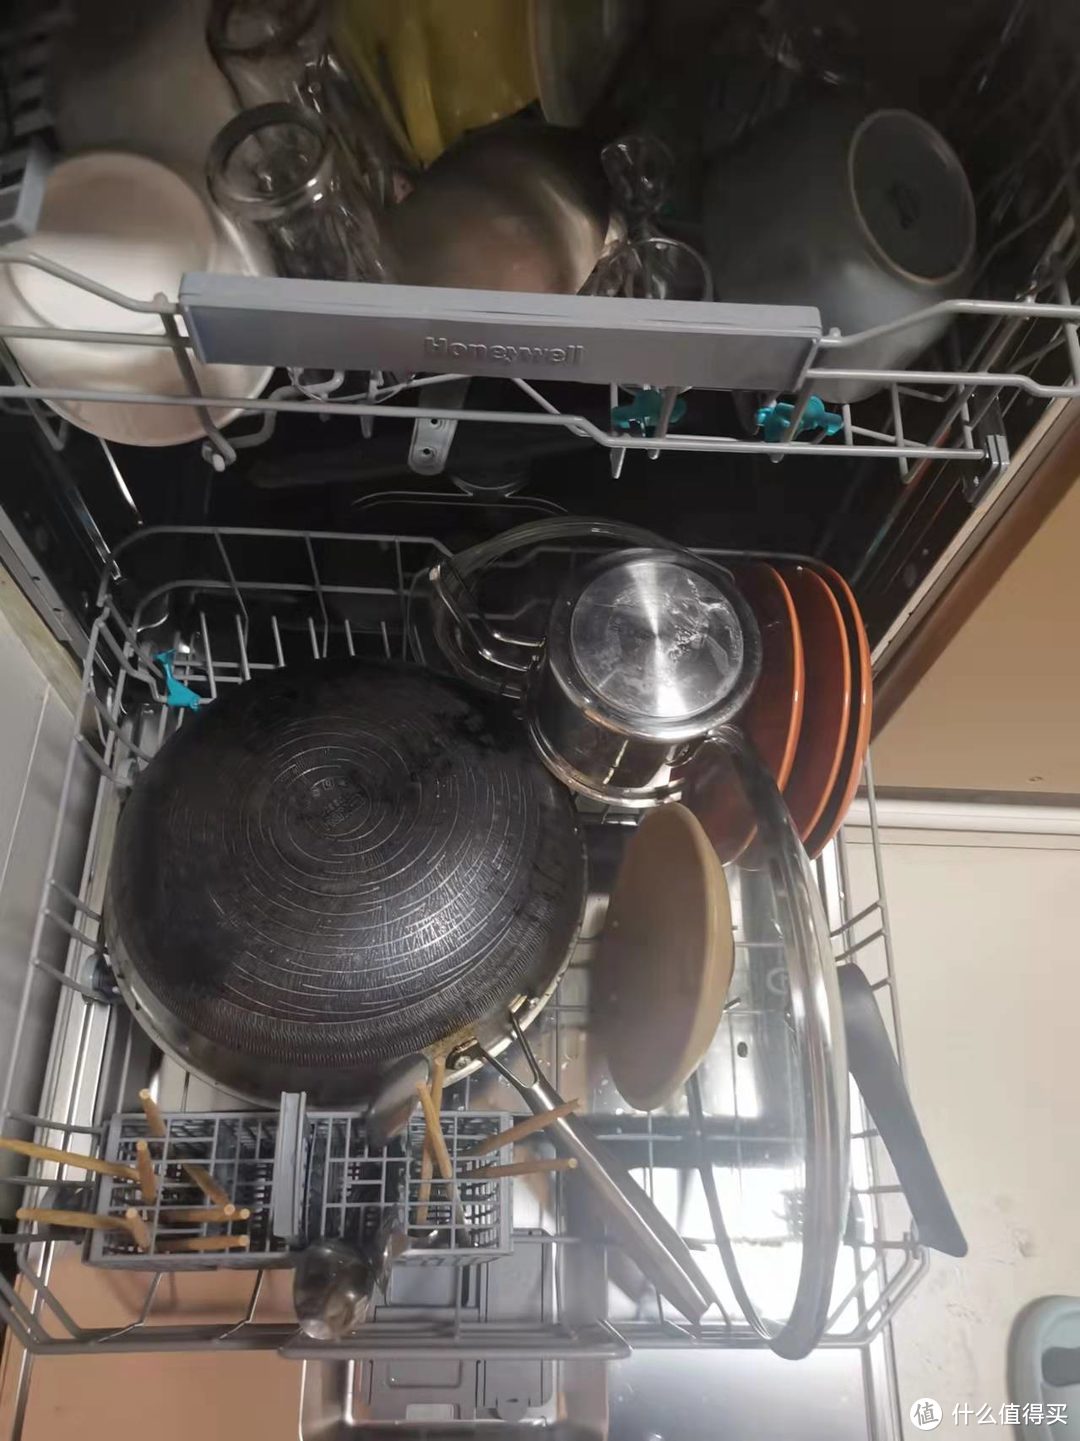 13套的容量对于我家来说好像有点太大了，锅碗瓢盆全扔进去，还有空间余地